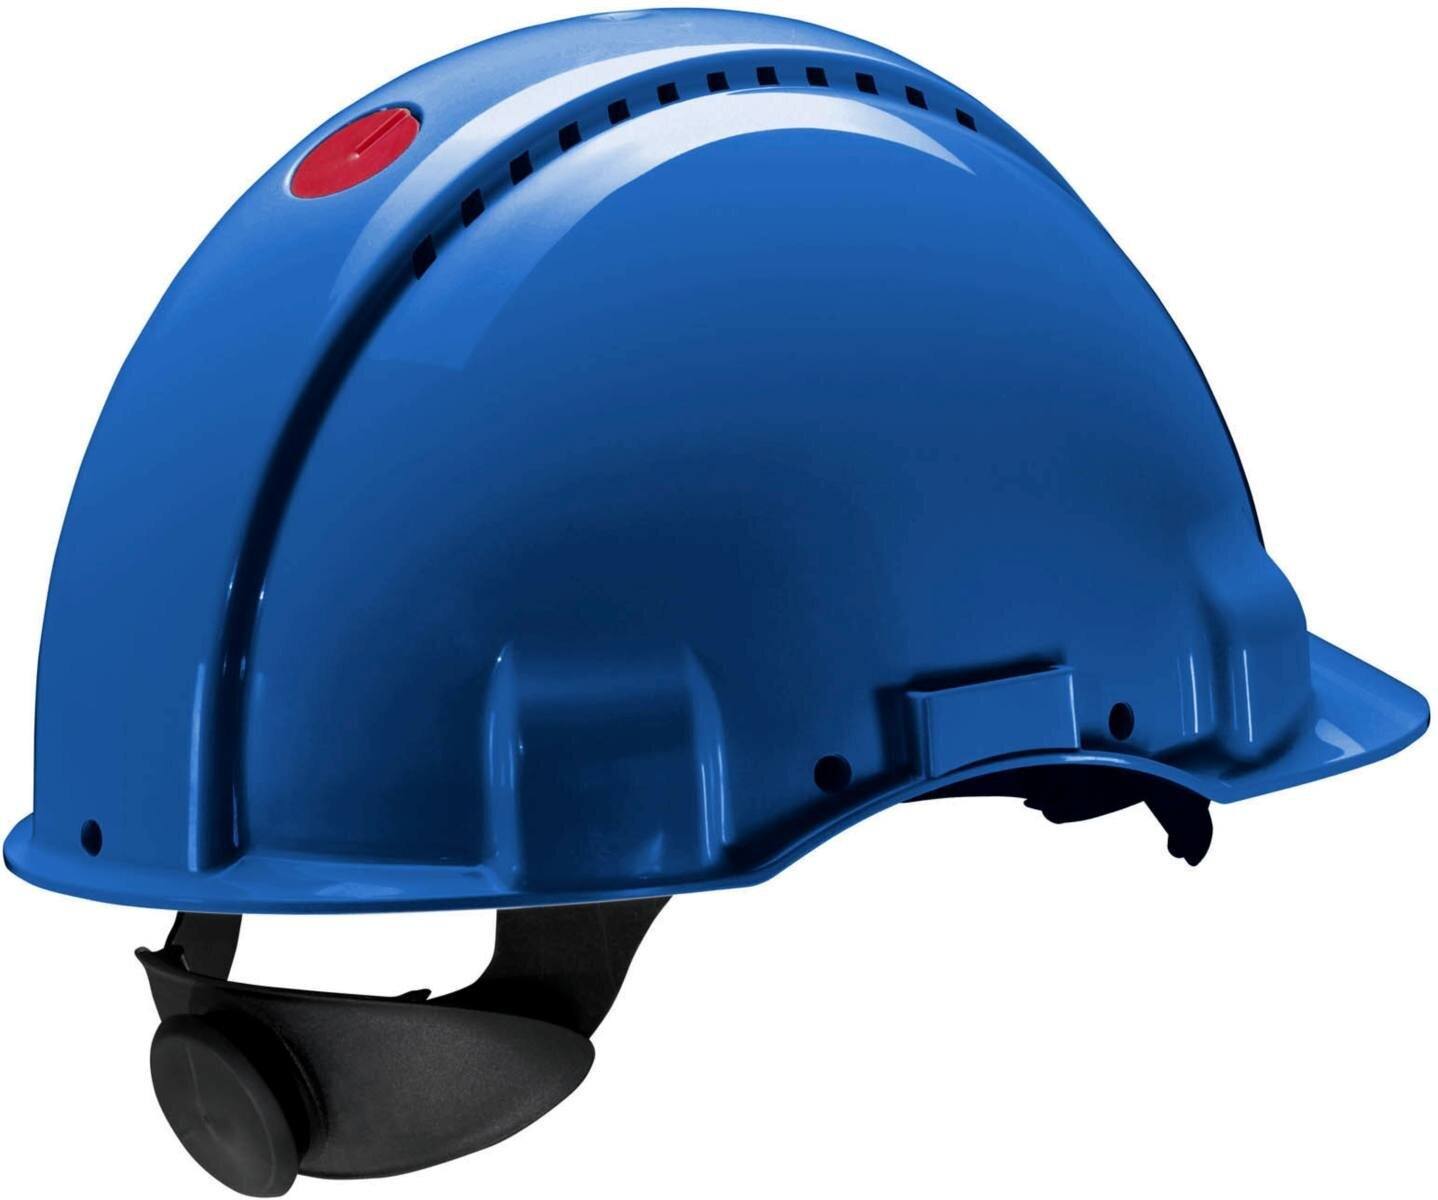 Elmetto di sicurezza 3M G3000 G30NUB in blu, ventilato, con uvicatore, cricchetto e cinturino in plastica per saldatura